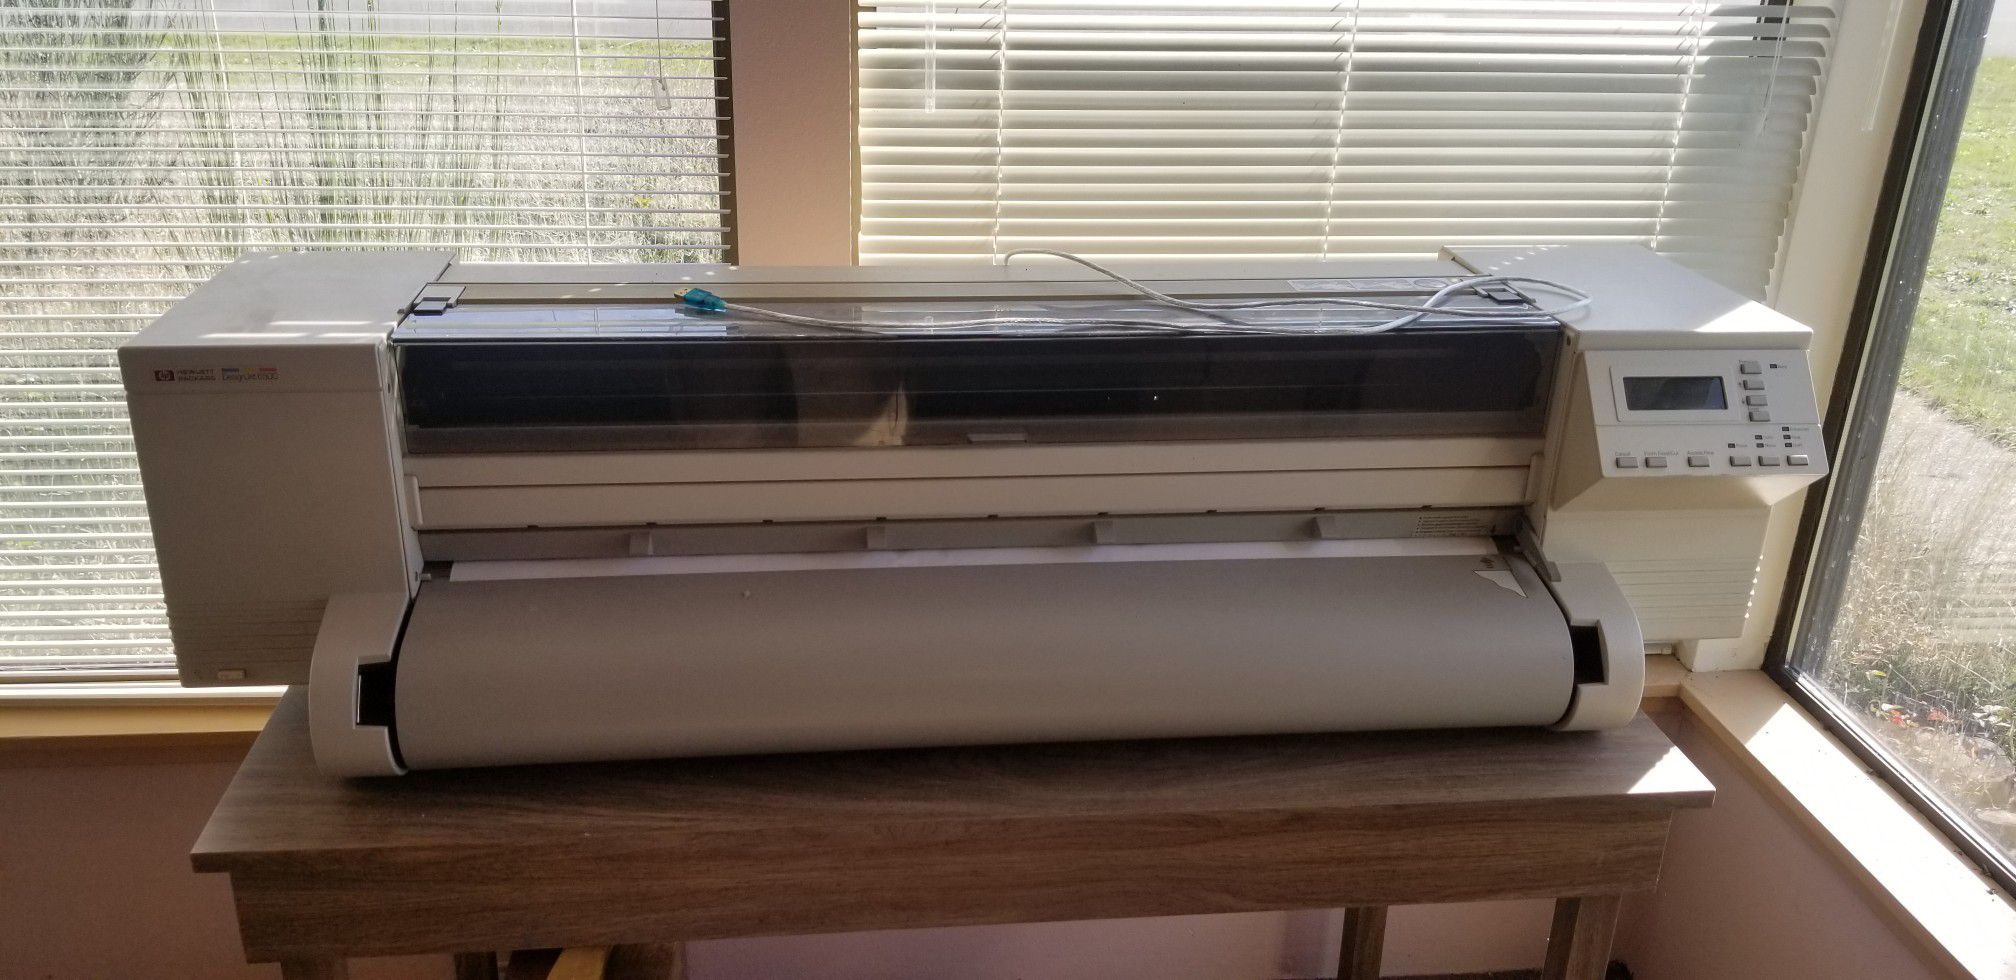 HP DesignJet 650C large format printer